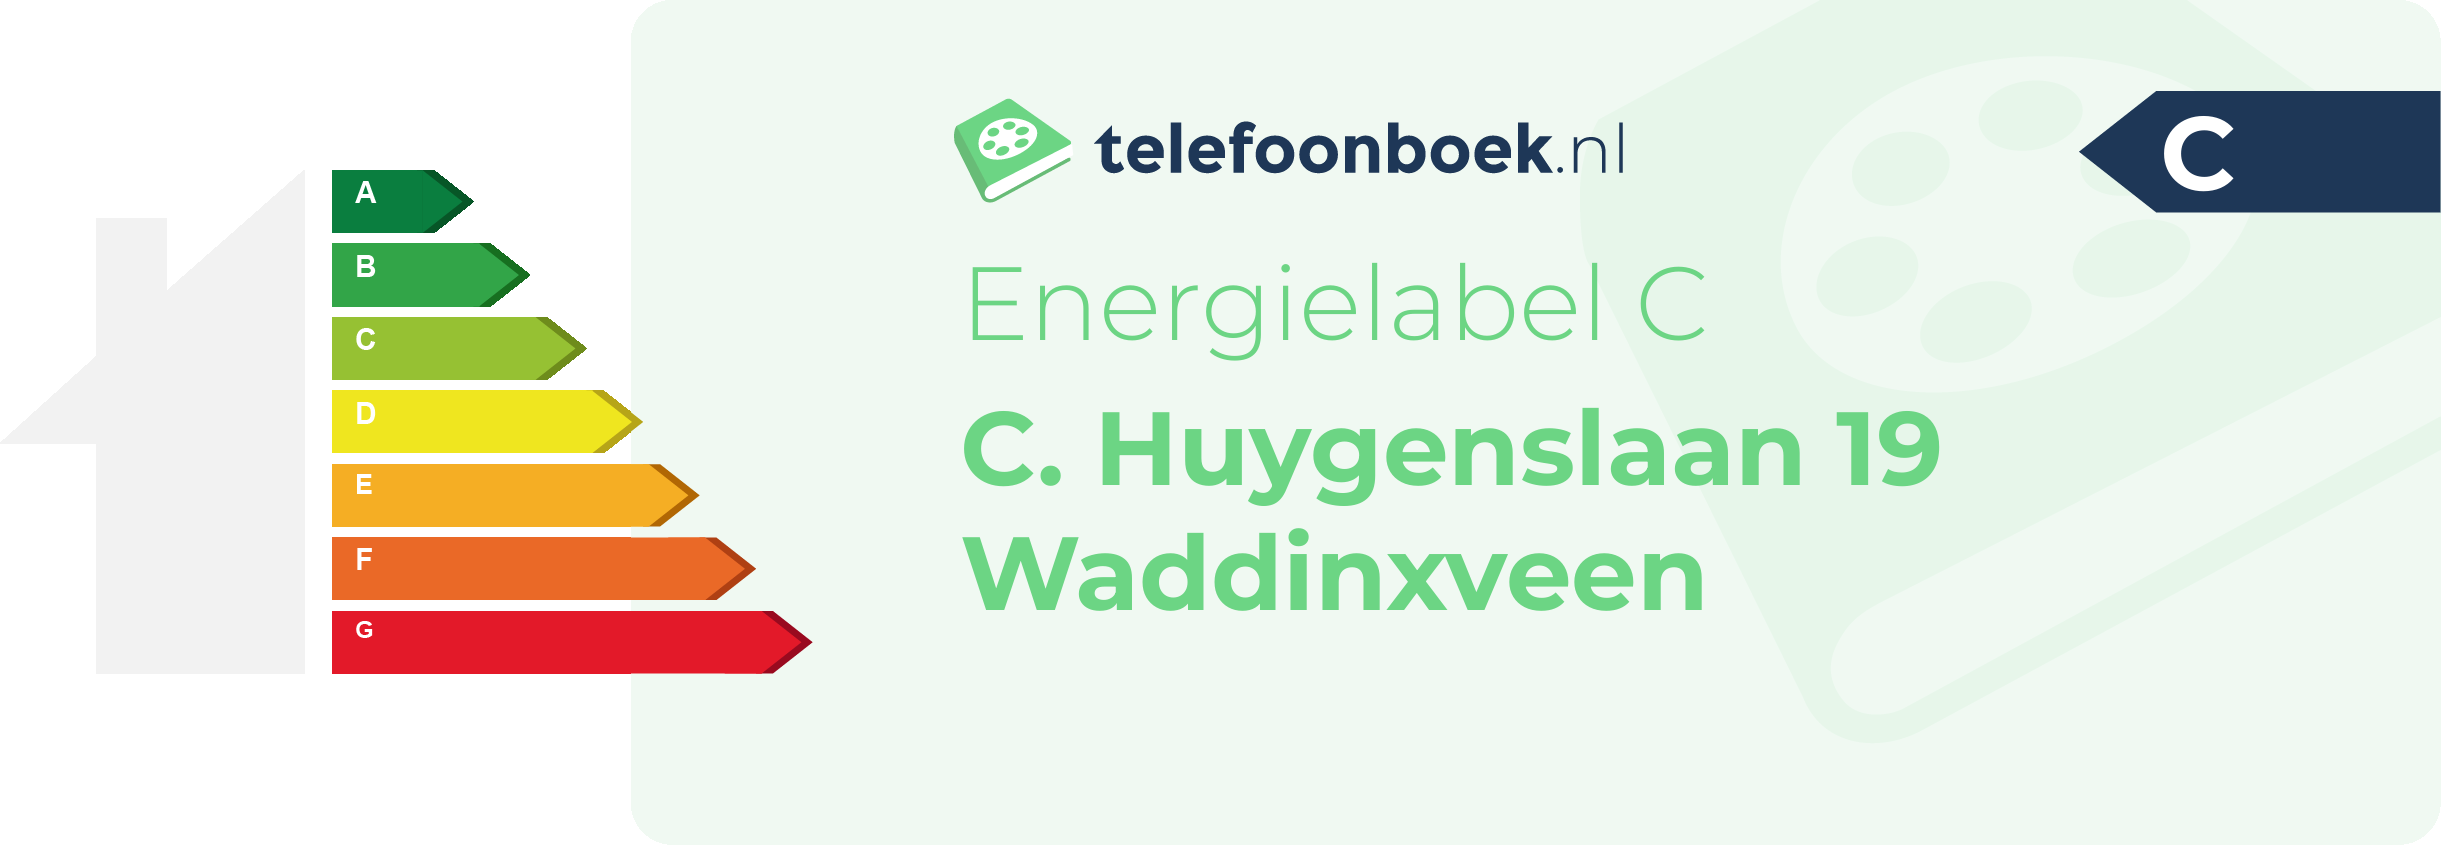 Energielabel C. Huygenslaan 19 Waddinxveen